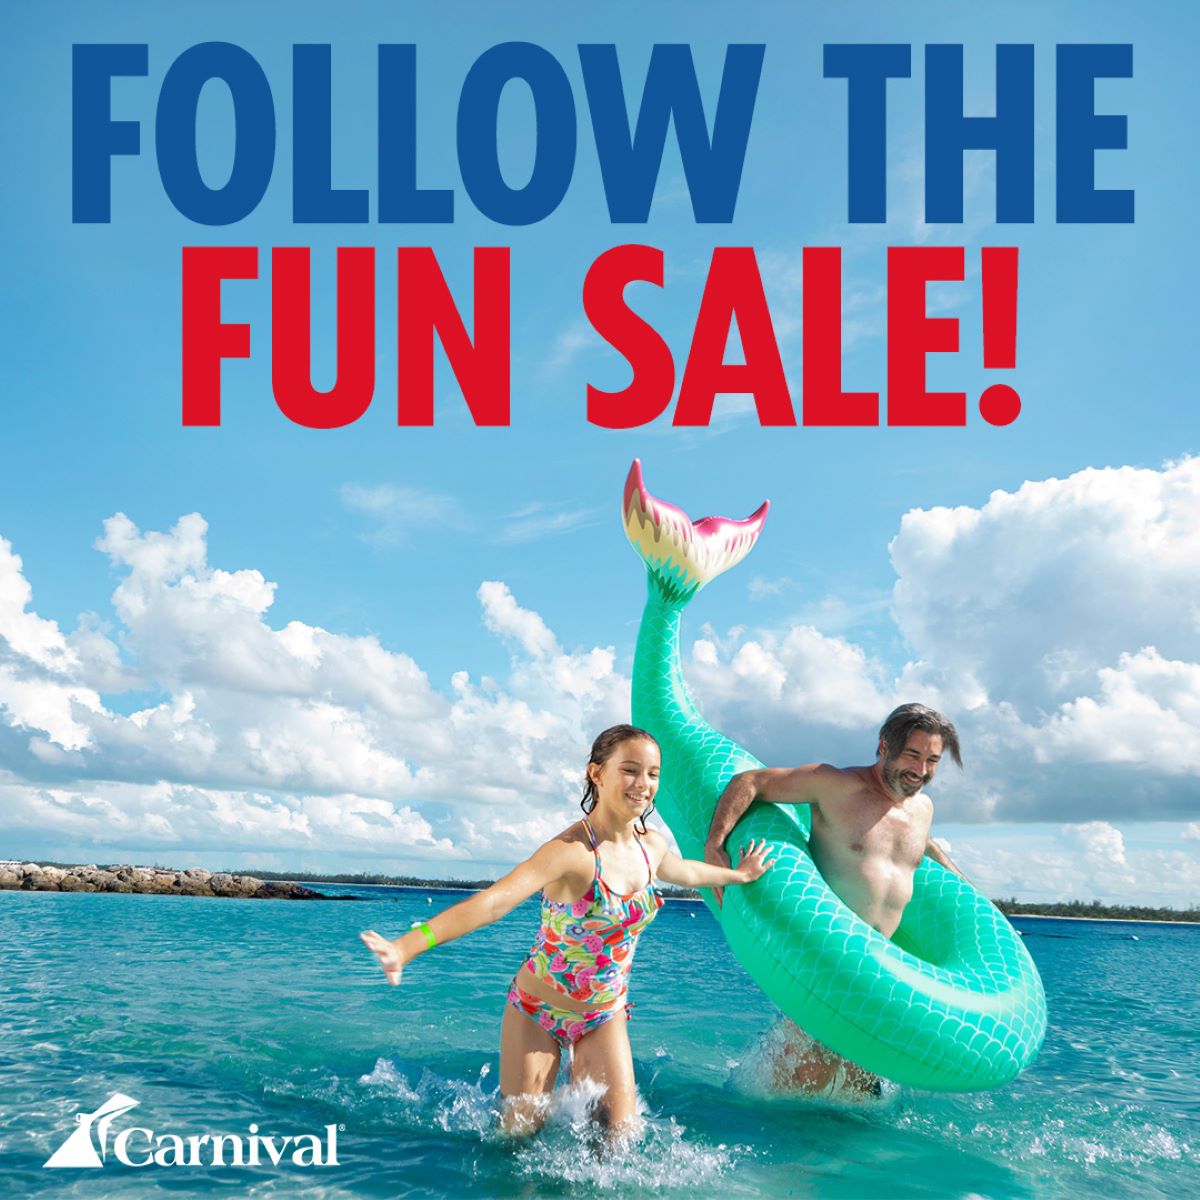 Follow The Fun Sale Carnival Cruises